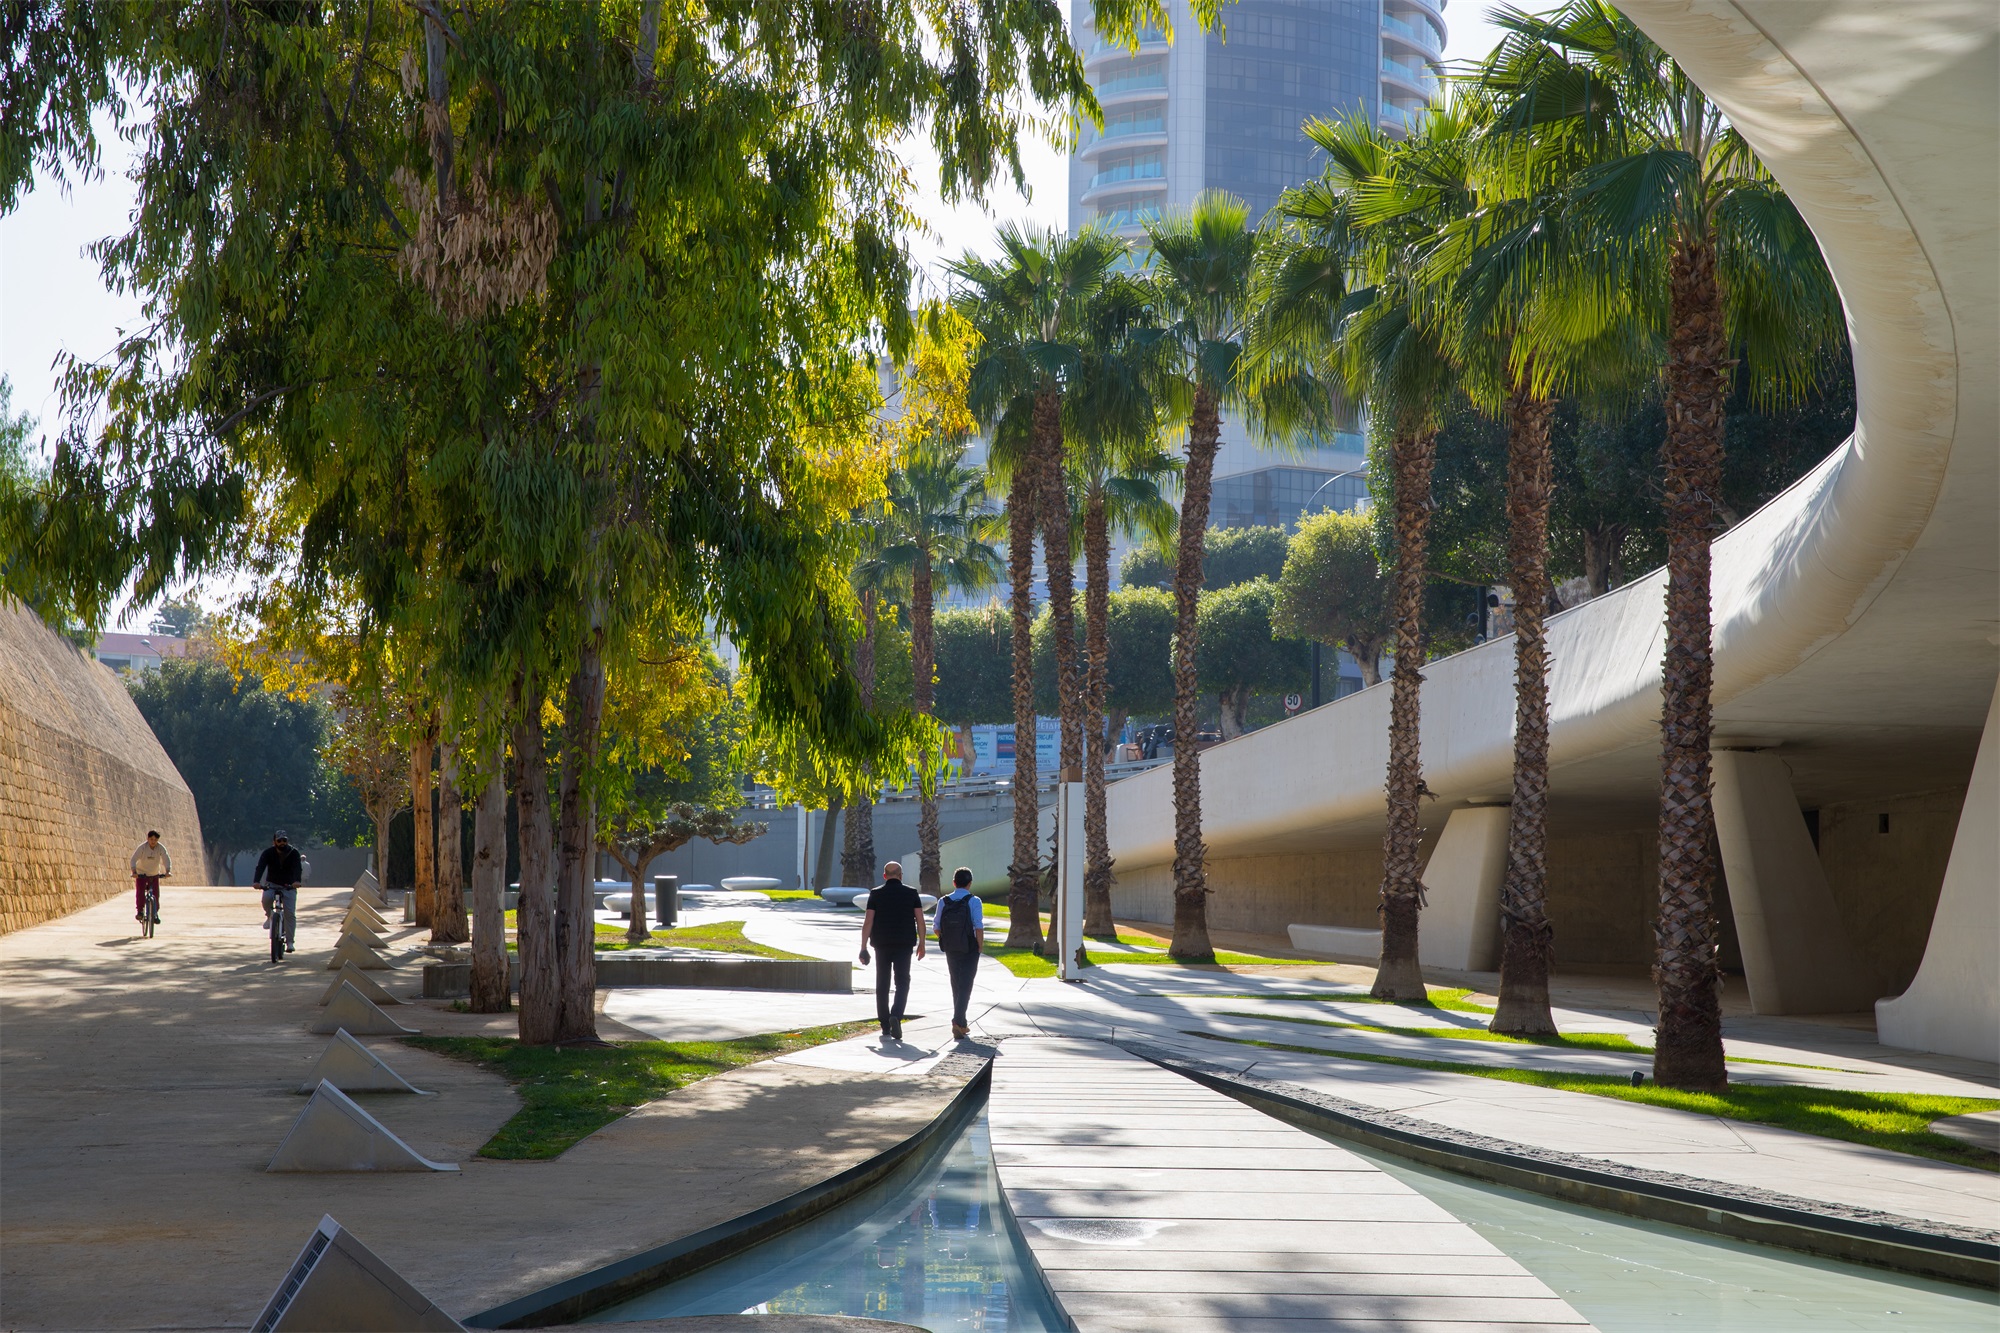 Eleftheria Square inaugurated by Zaha Hadid Architects – mooool